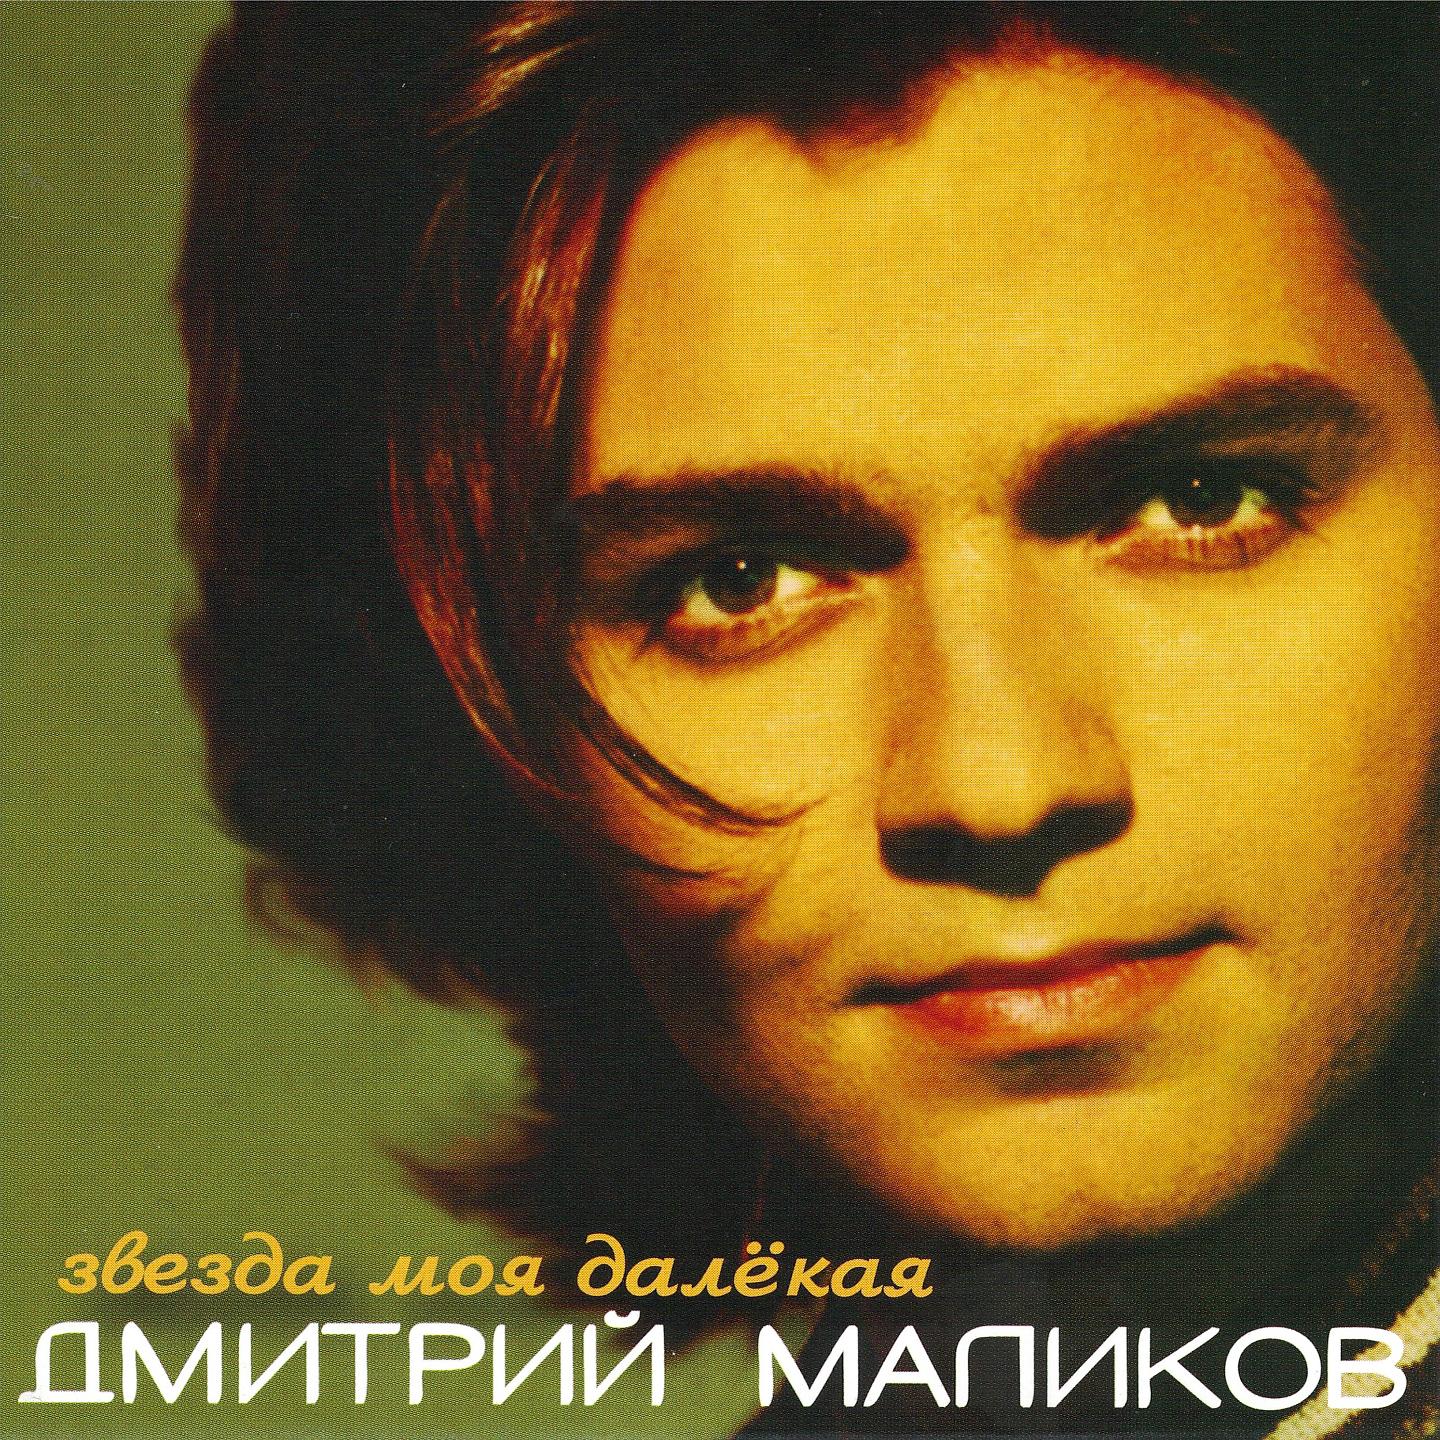 Альбом дмитрия маликова. Маликов 1998.